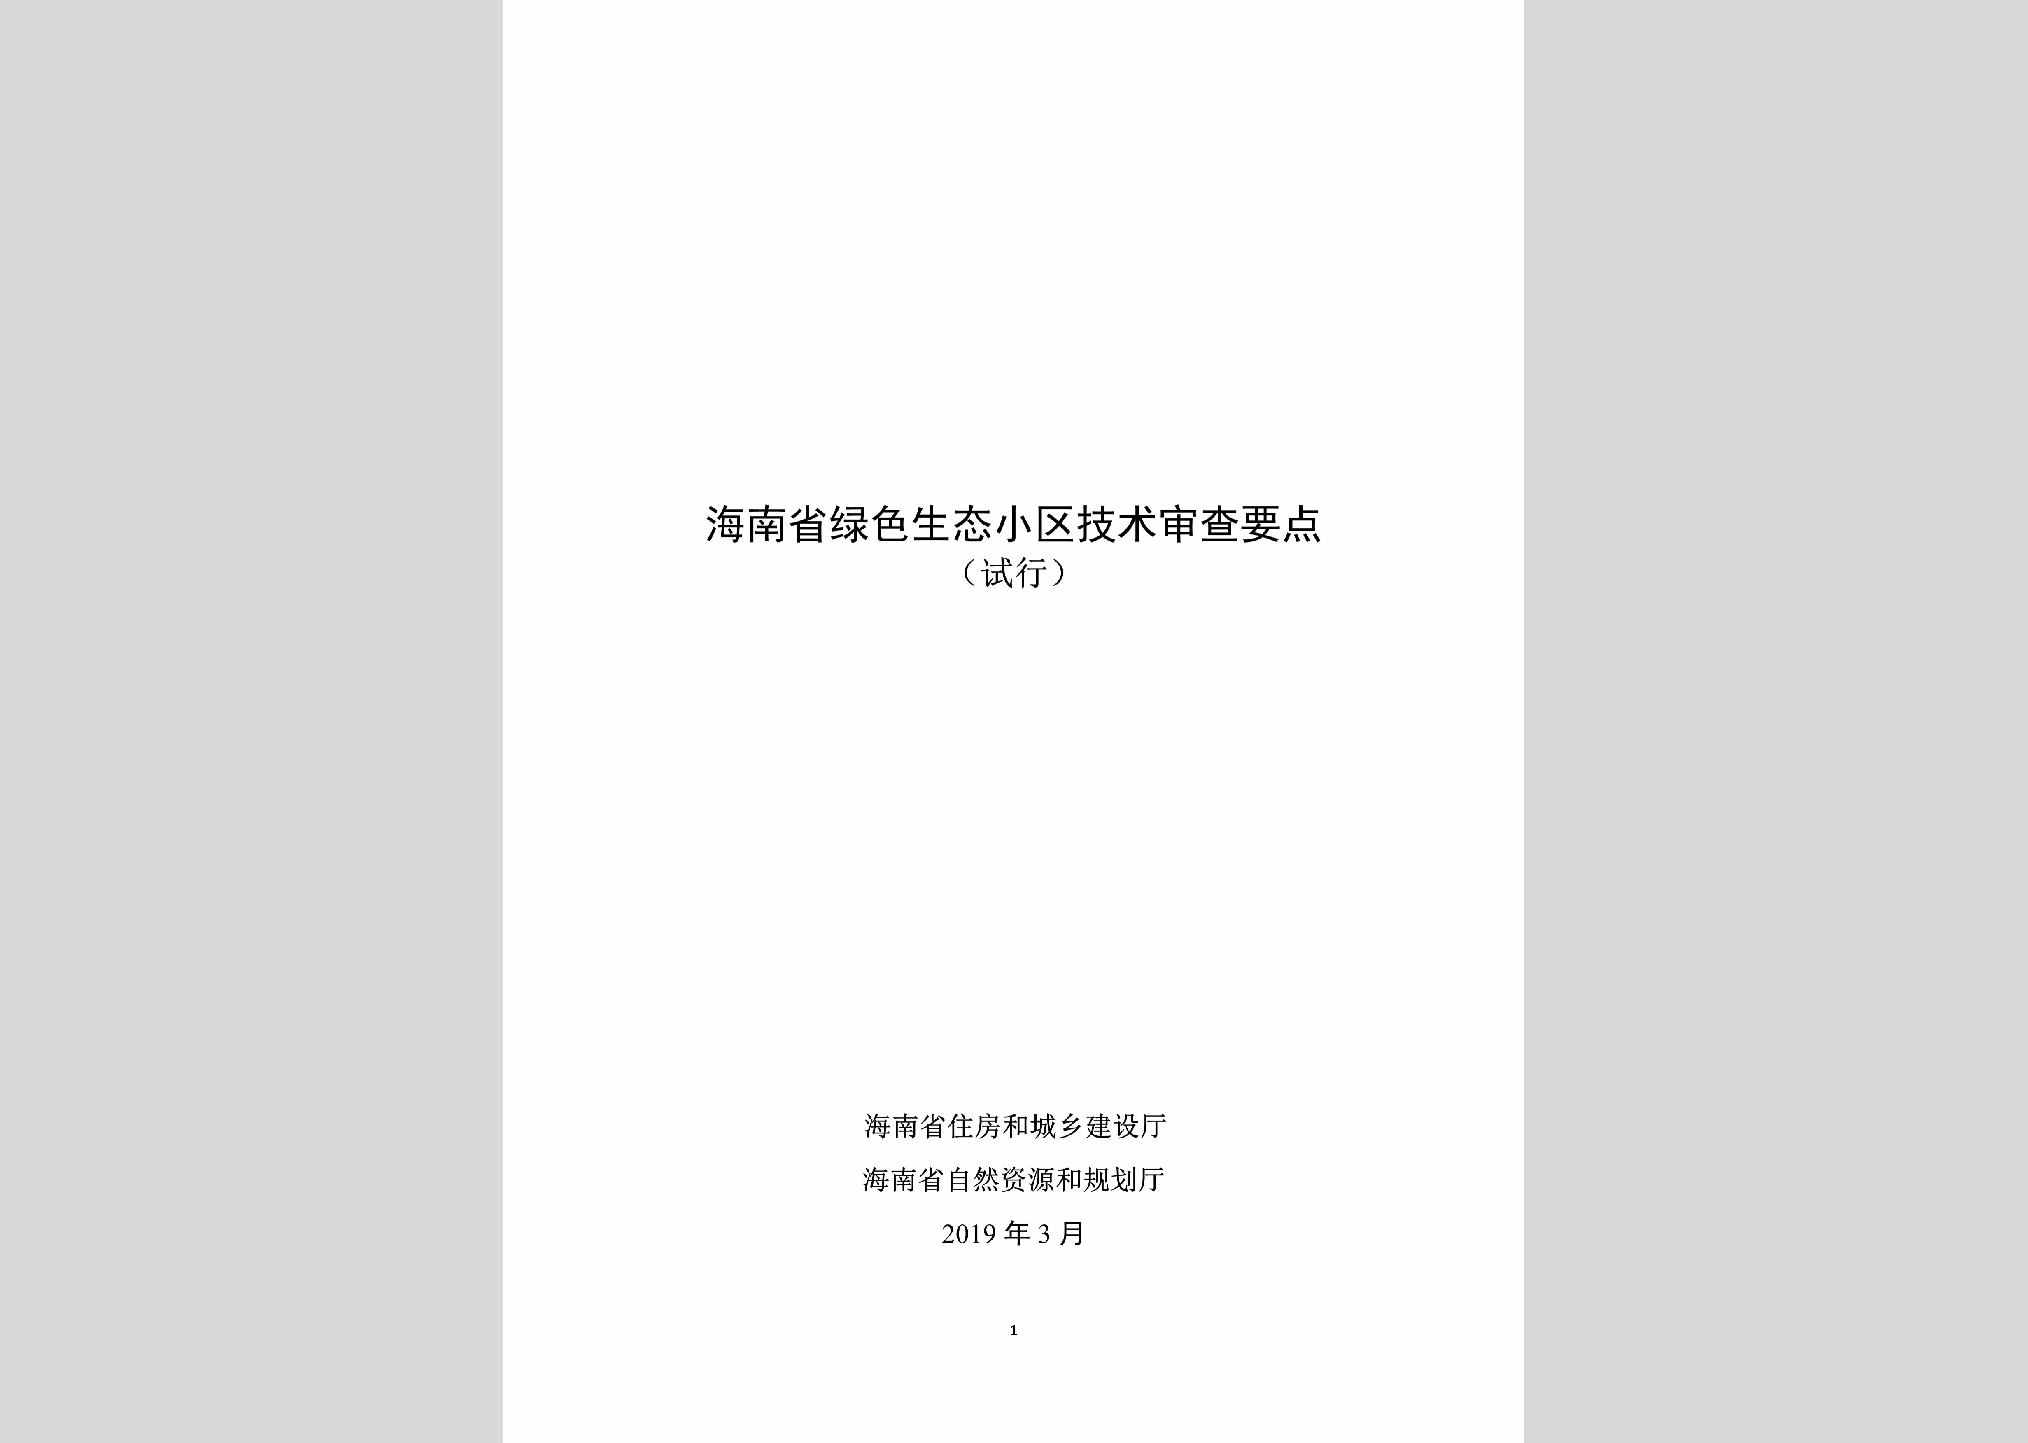 STXQJSSC：海南省绿色生态小区技术审查要点(试行)